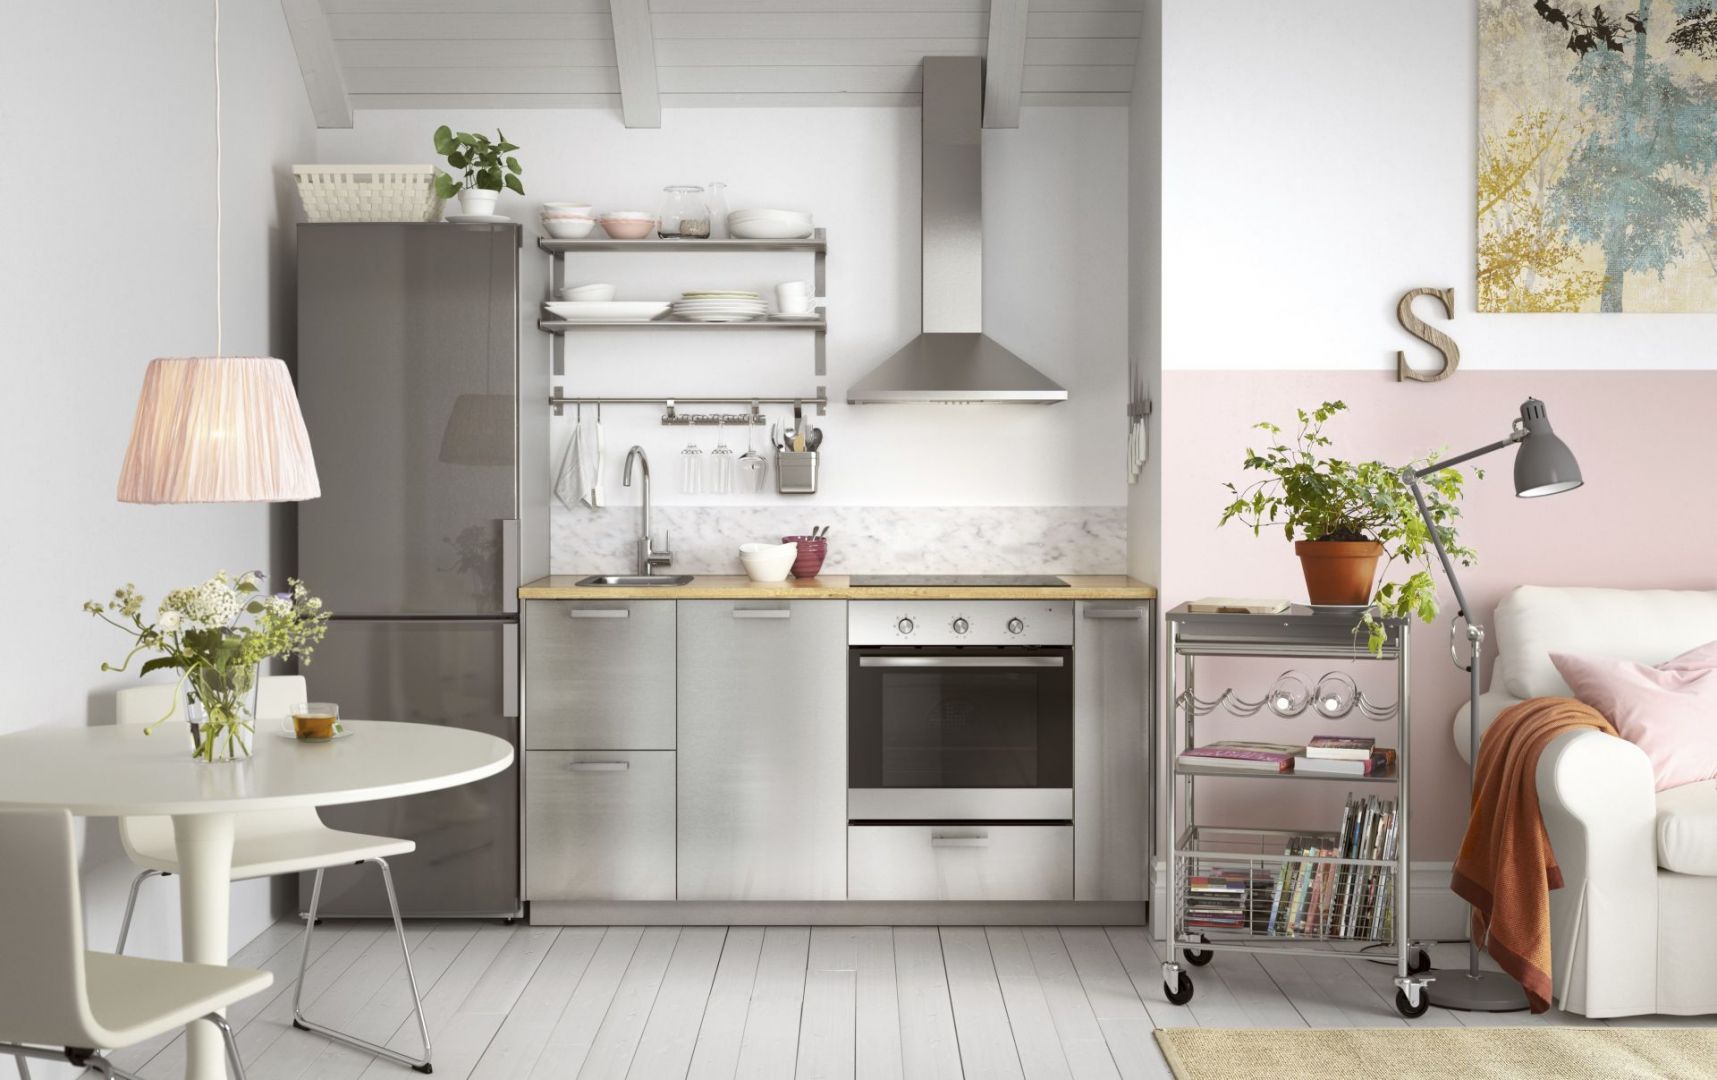 Malutkie kuchnie będą optycznie wydawały się większe, jeśli wolną przestrzeń ścian wykorzystamy na otwarte półki. Dzięki nim aranżacja będzie nieco lżejsza. Fot. IKEA